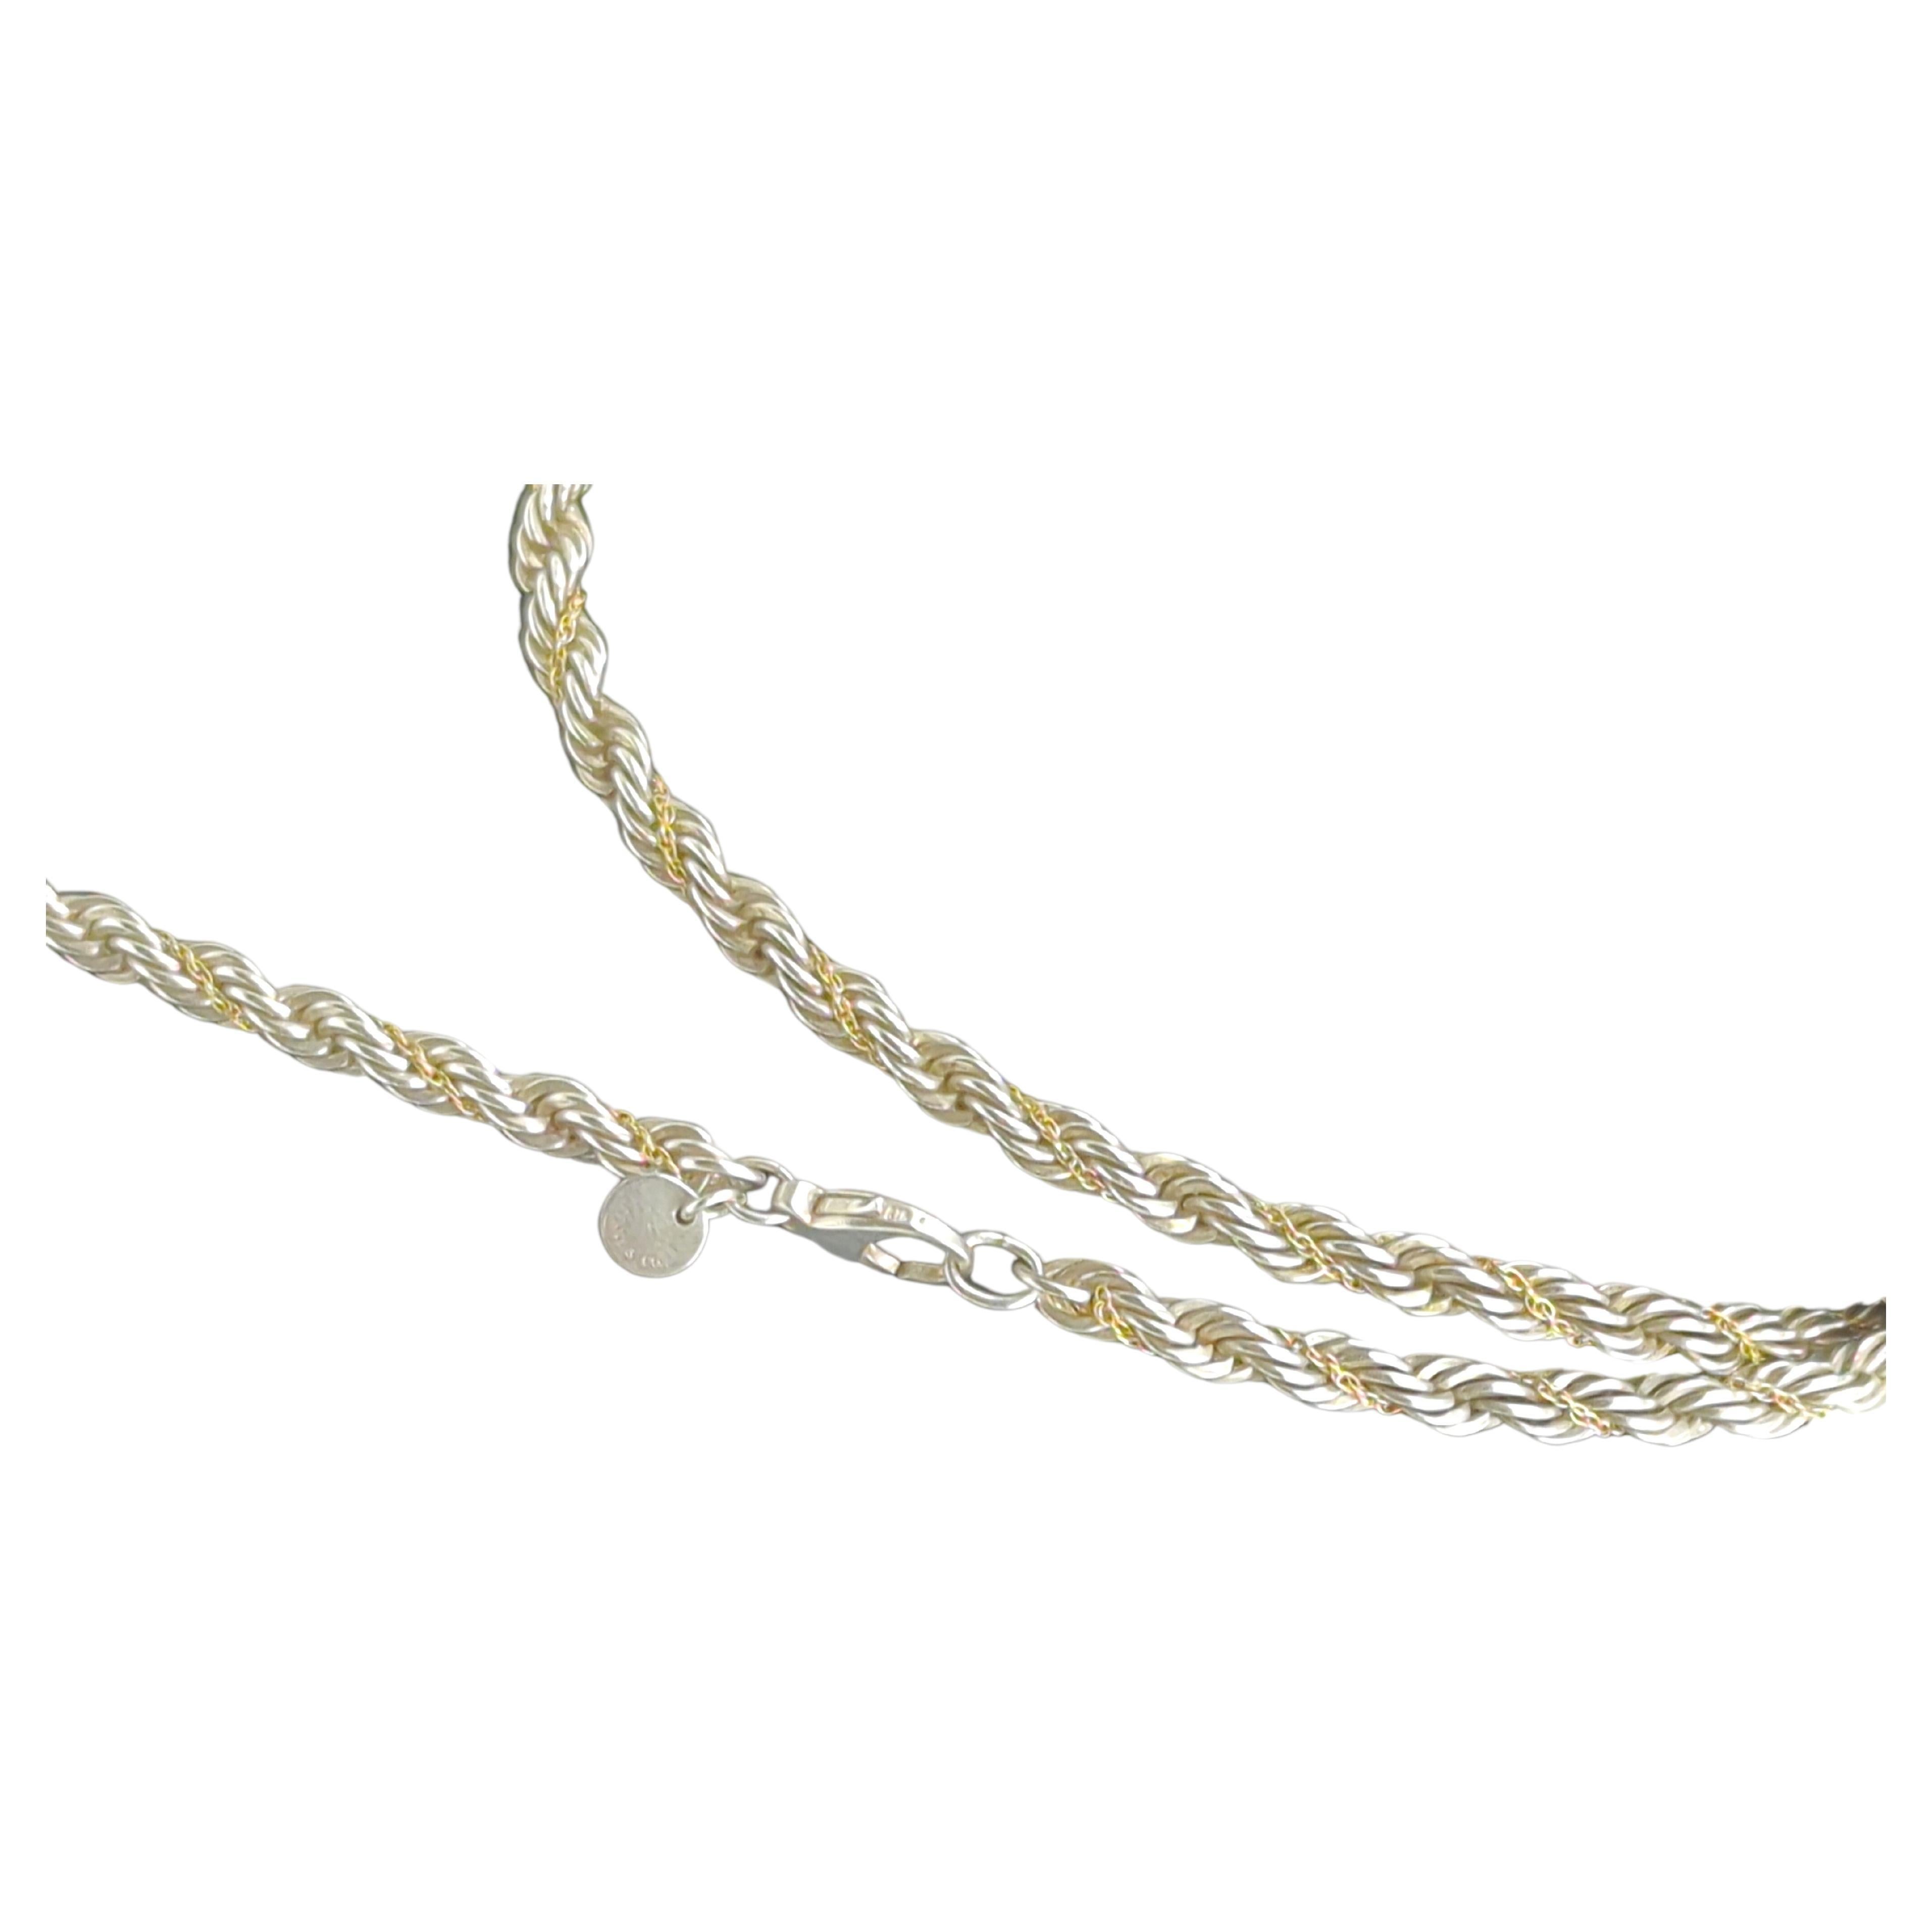 Tiffany&Co. Sterlingsilber 925/18K Gelbgold 750 Seil Kette Halskette 5mm 30